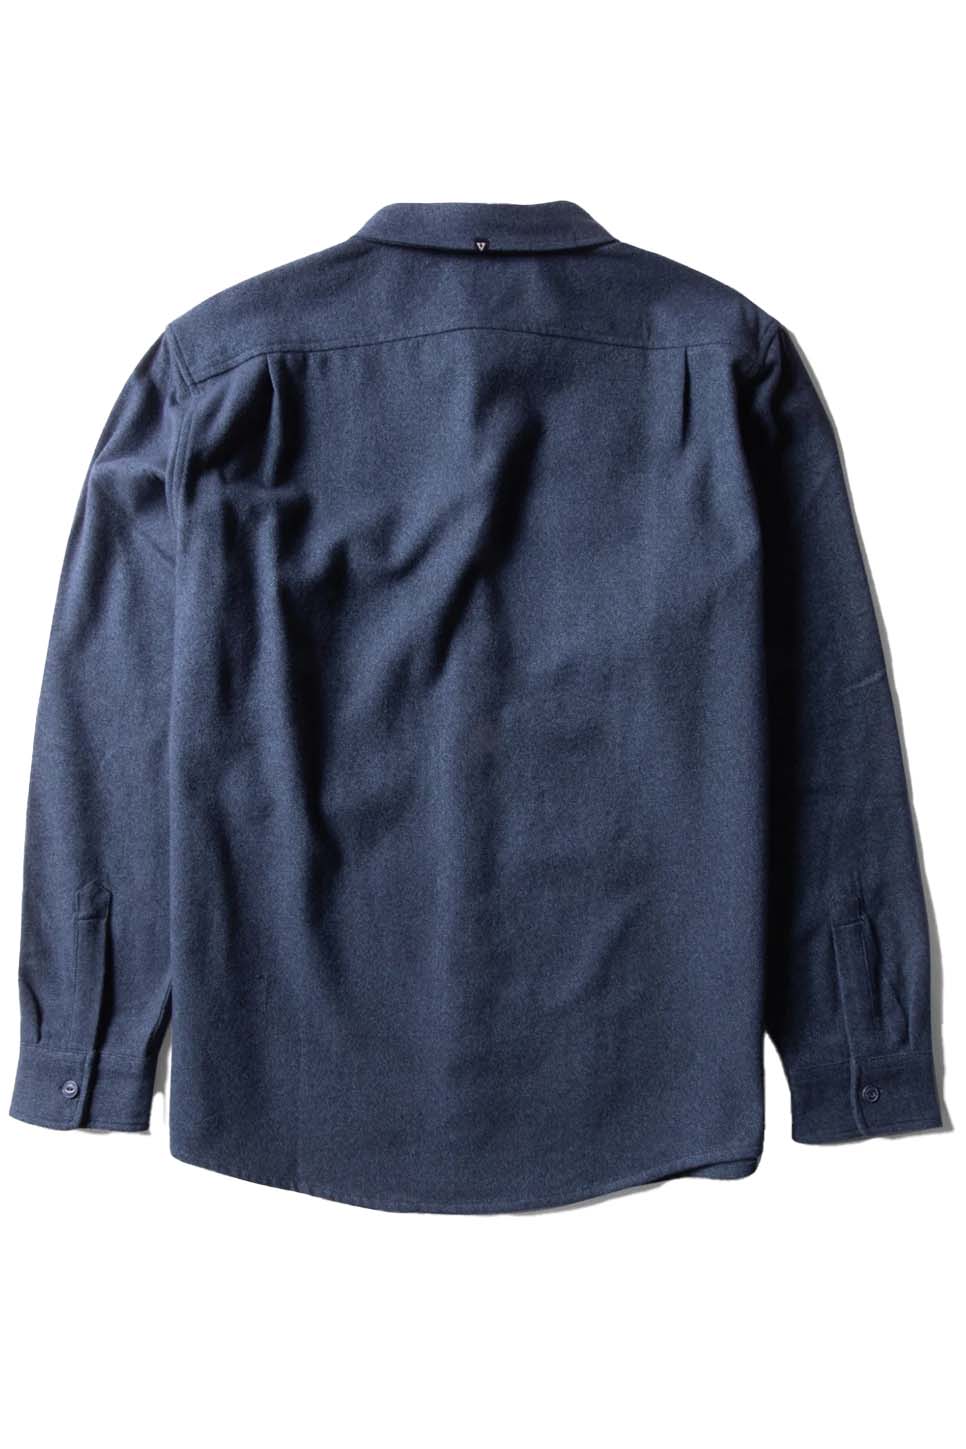 Vissla - Shaper Eco LS Flannel - Tidal Blue - Back